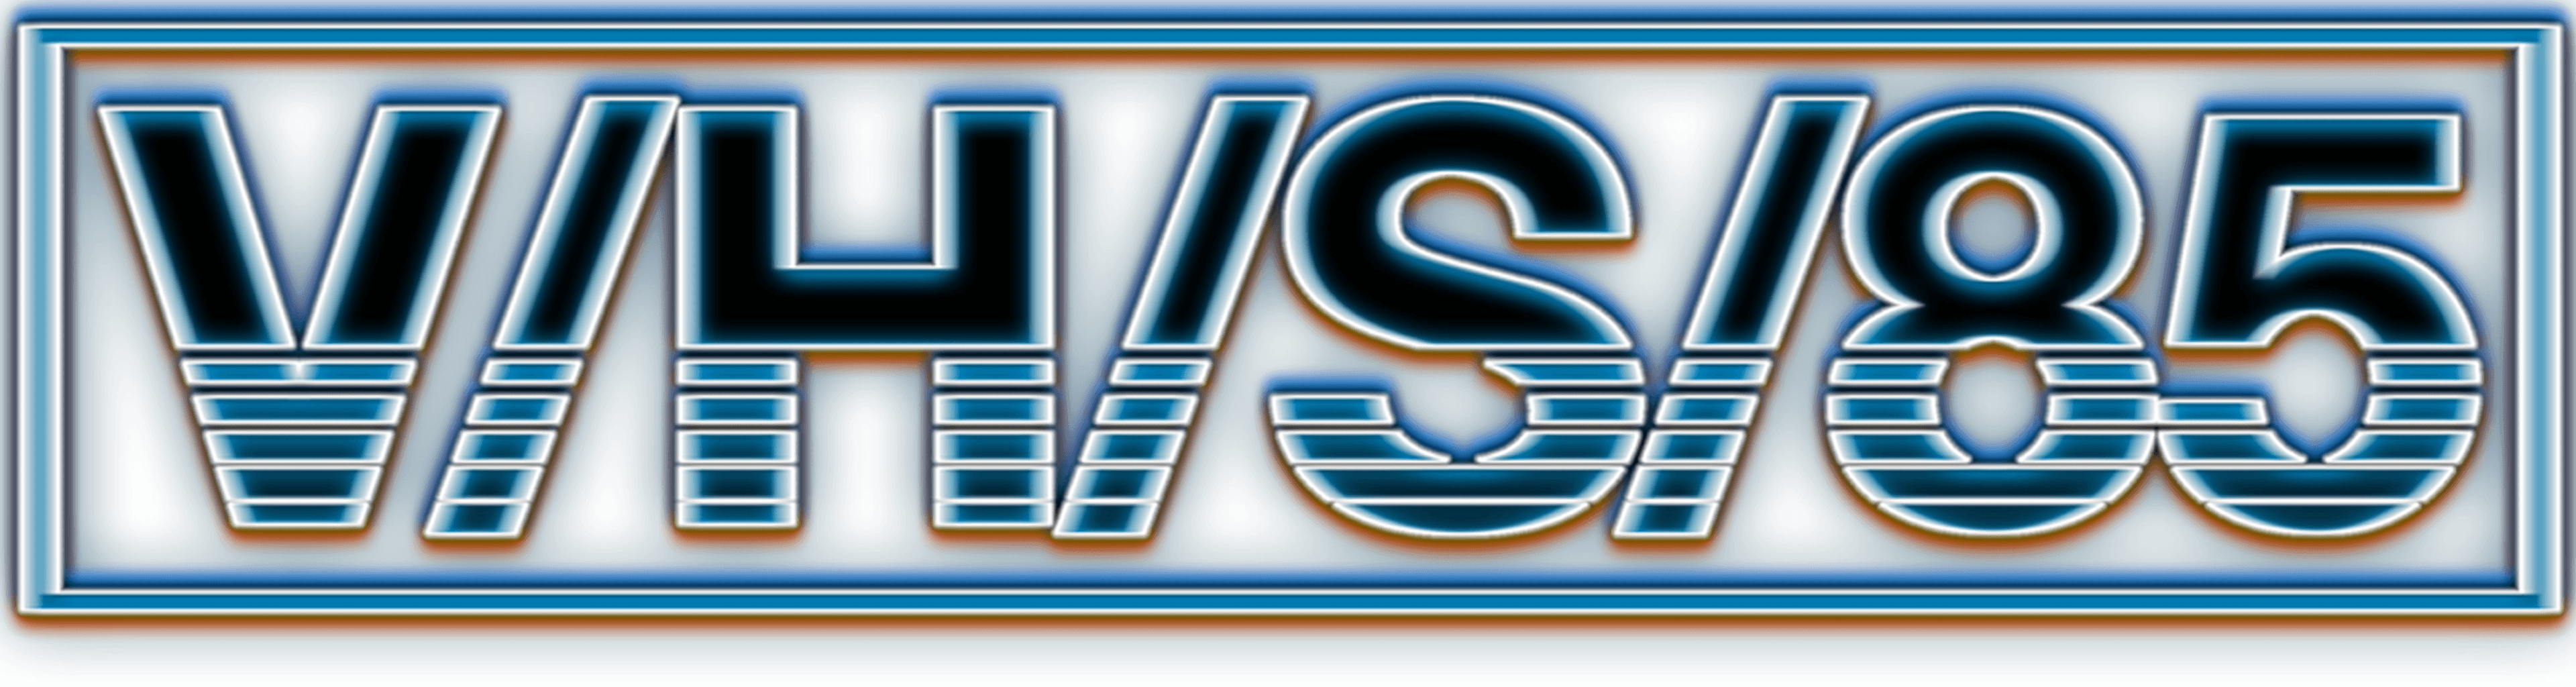 V/H/S/85 logo